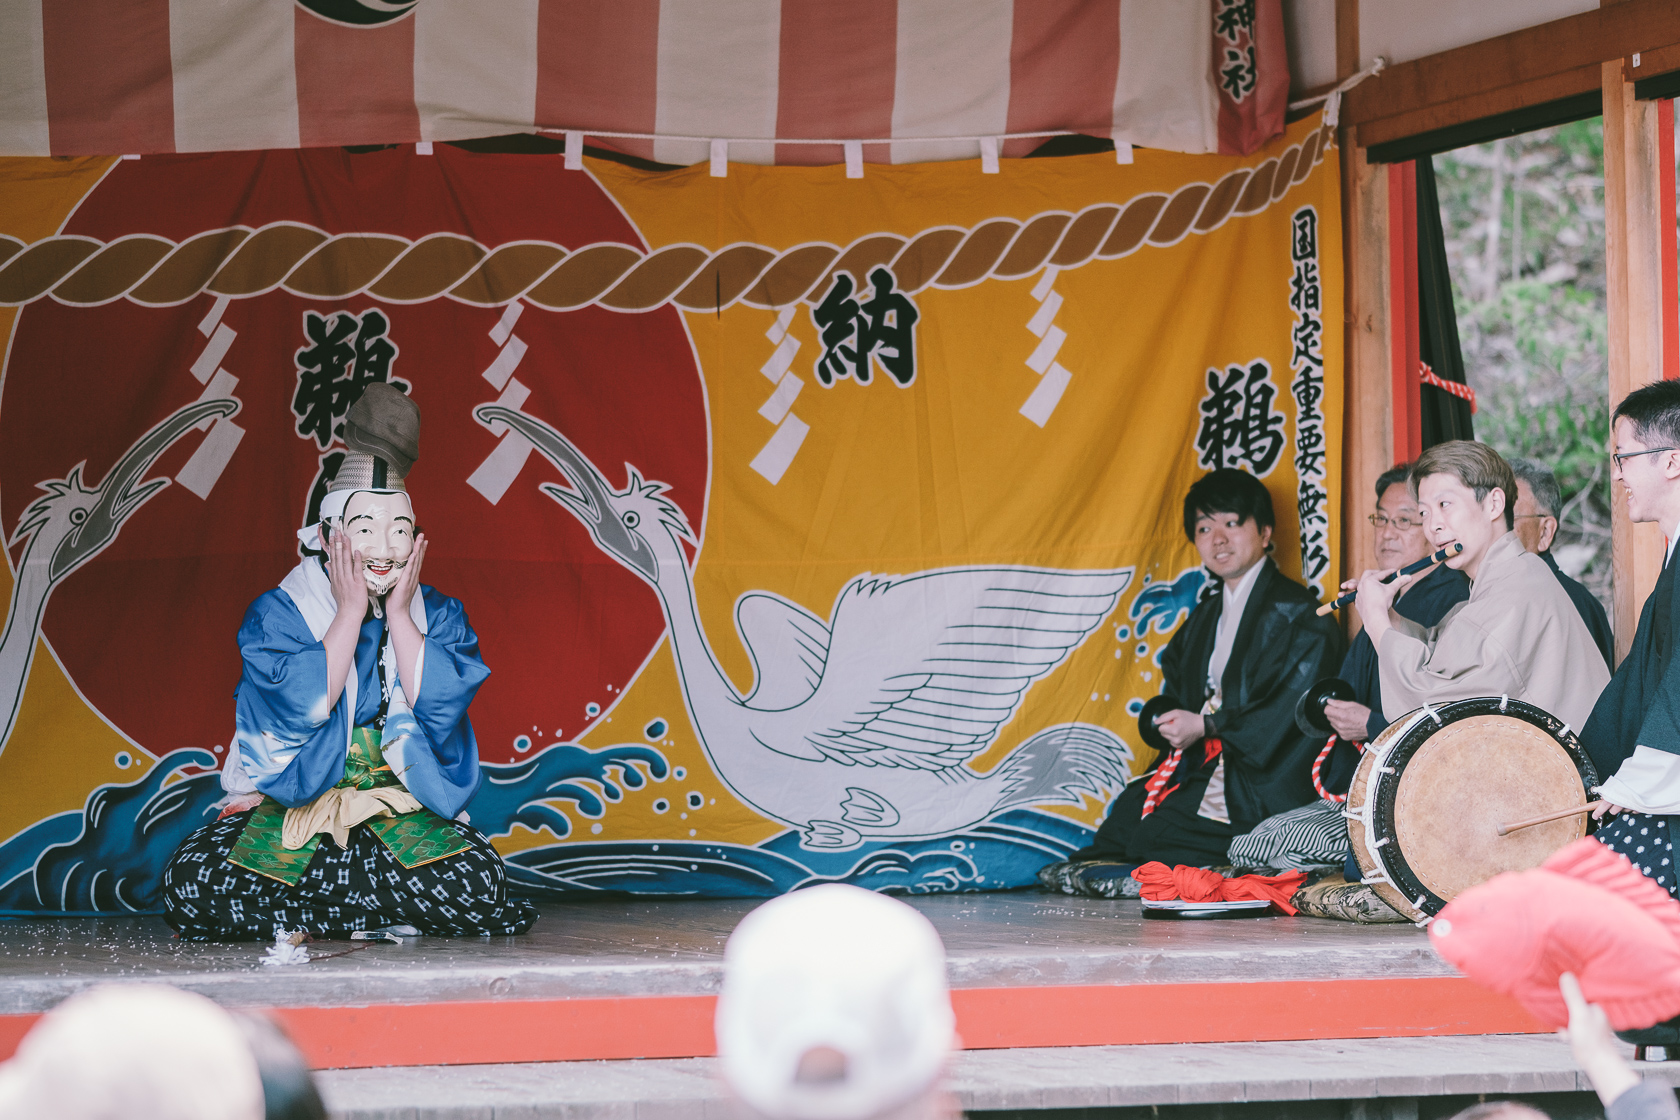 鵜鳥神楽, 鵜鳥神社, 恵比須舞 の写真